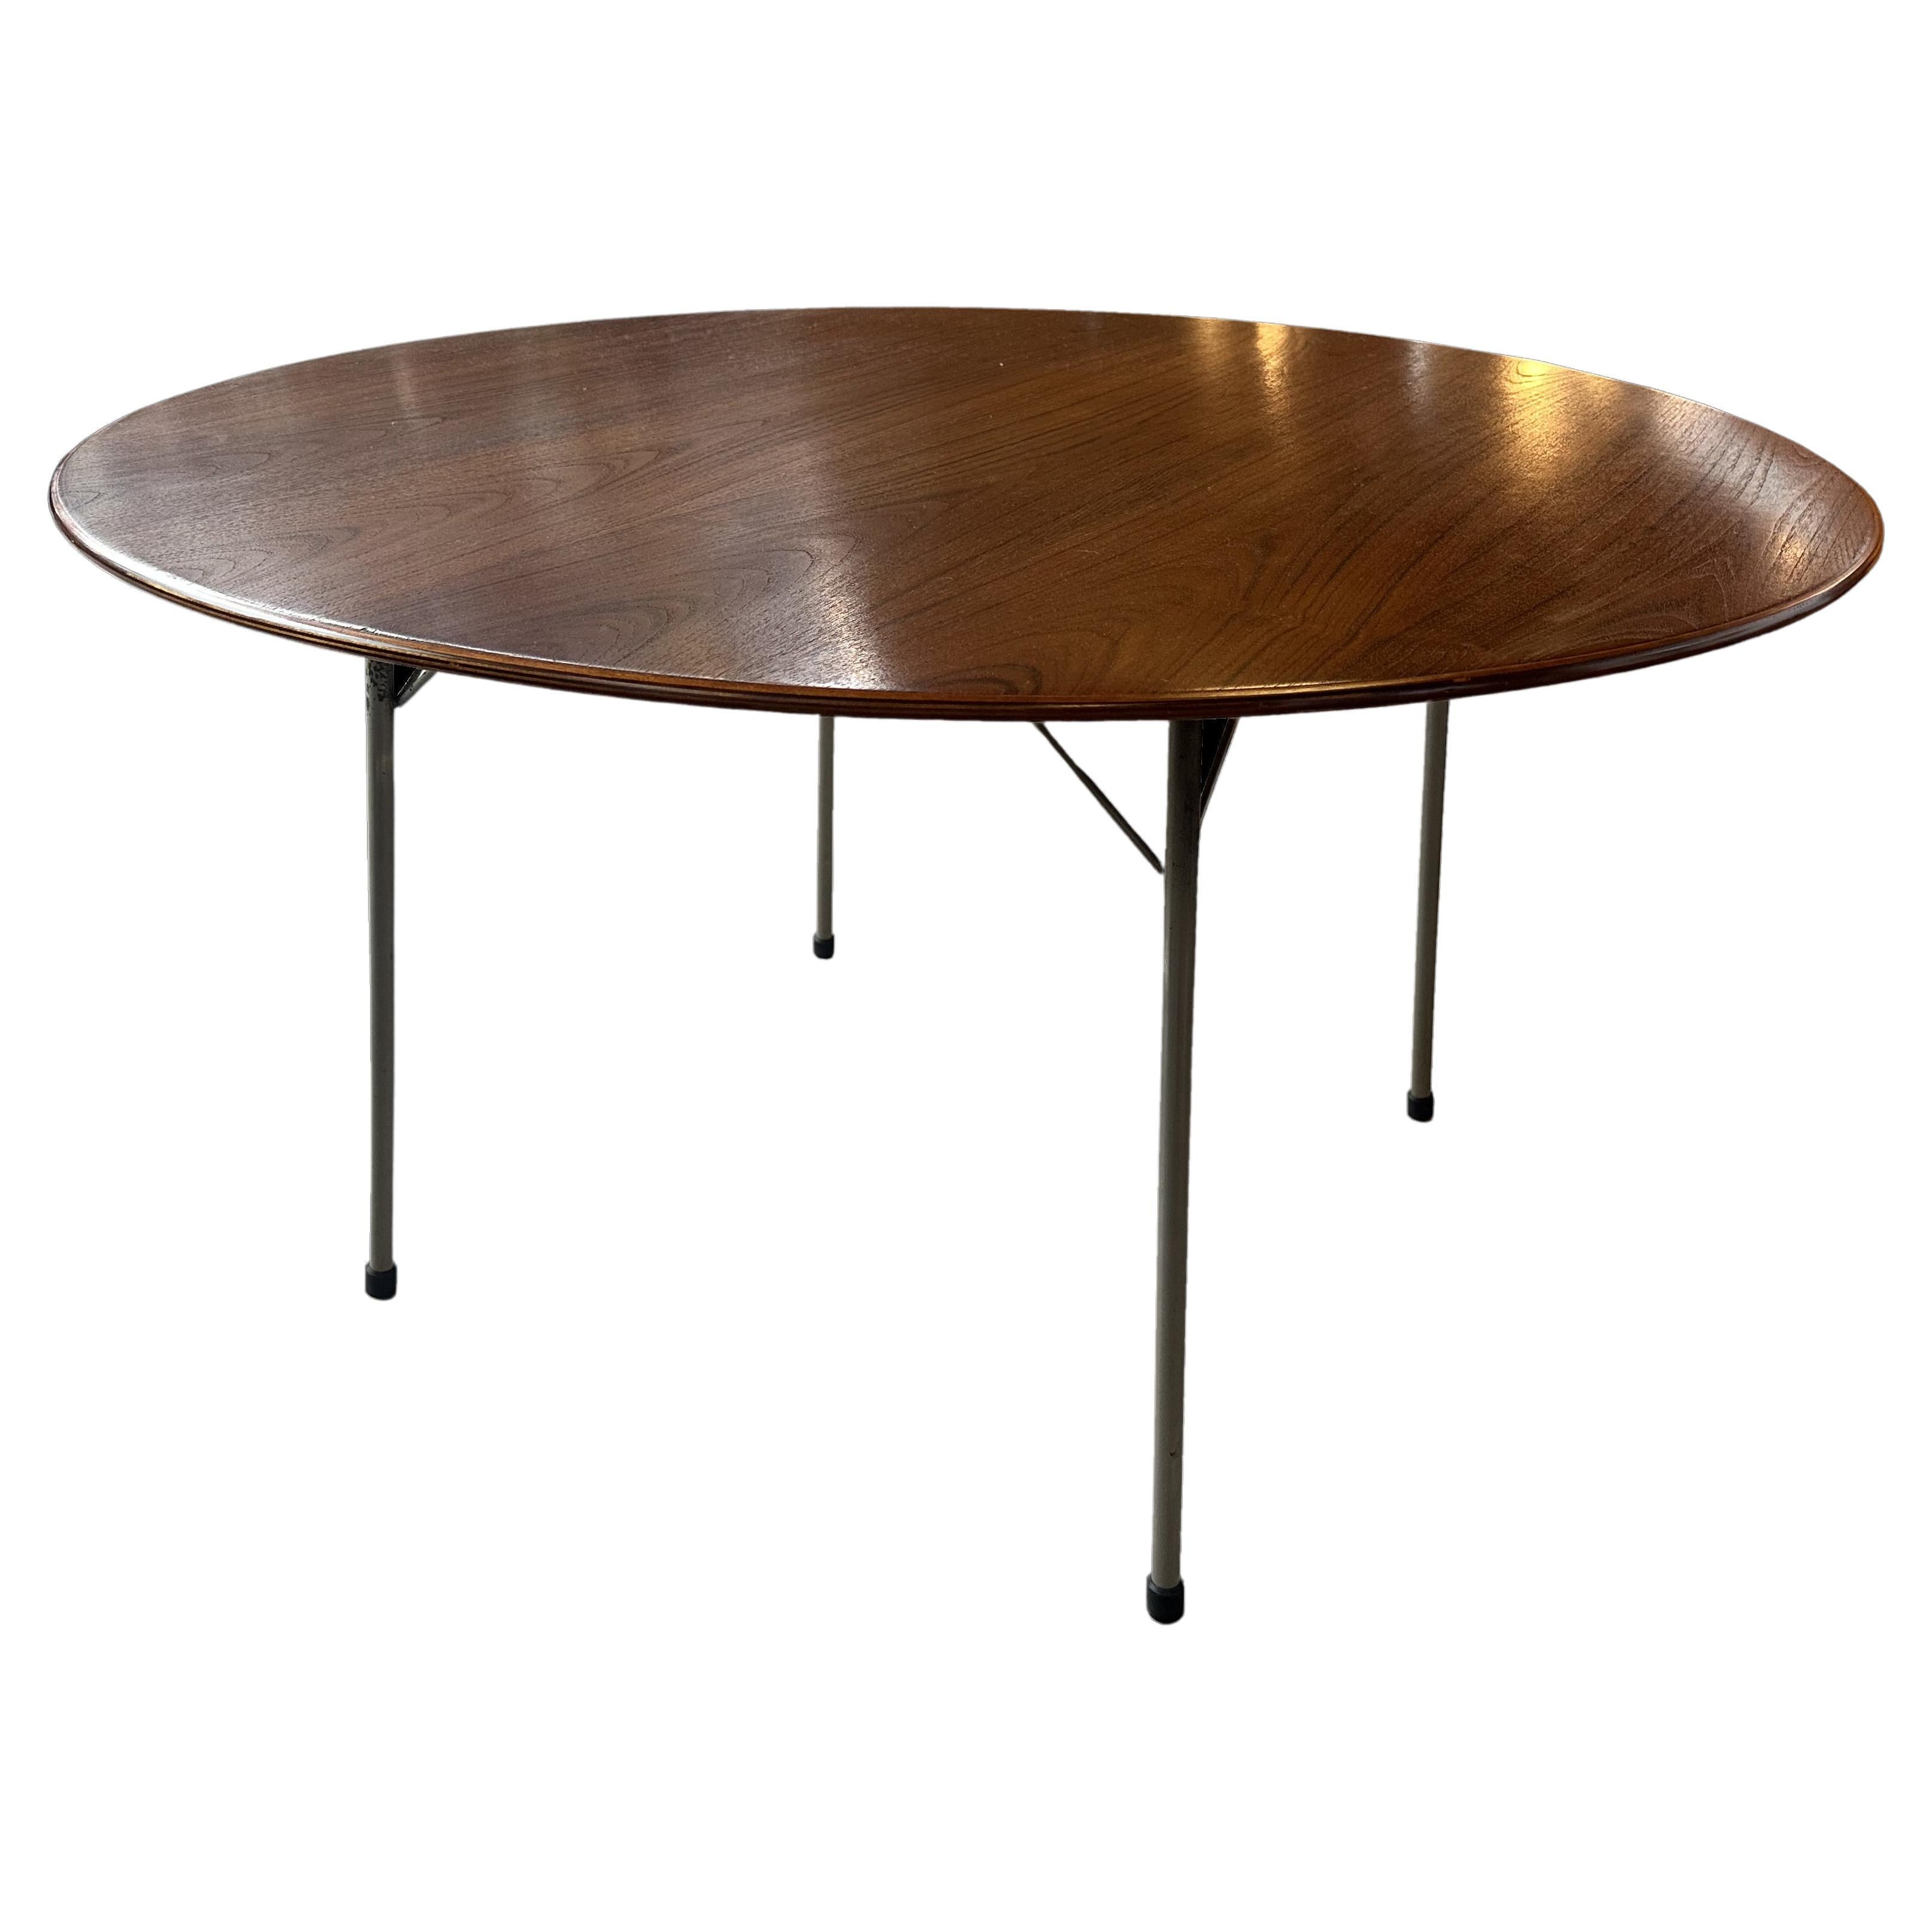 Arne Jacobsen Teak Model 3600 Circular Dining Table for Fritz Hansen For Sale